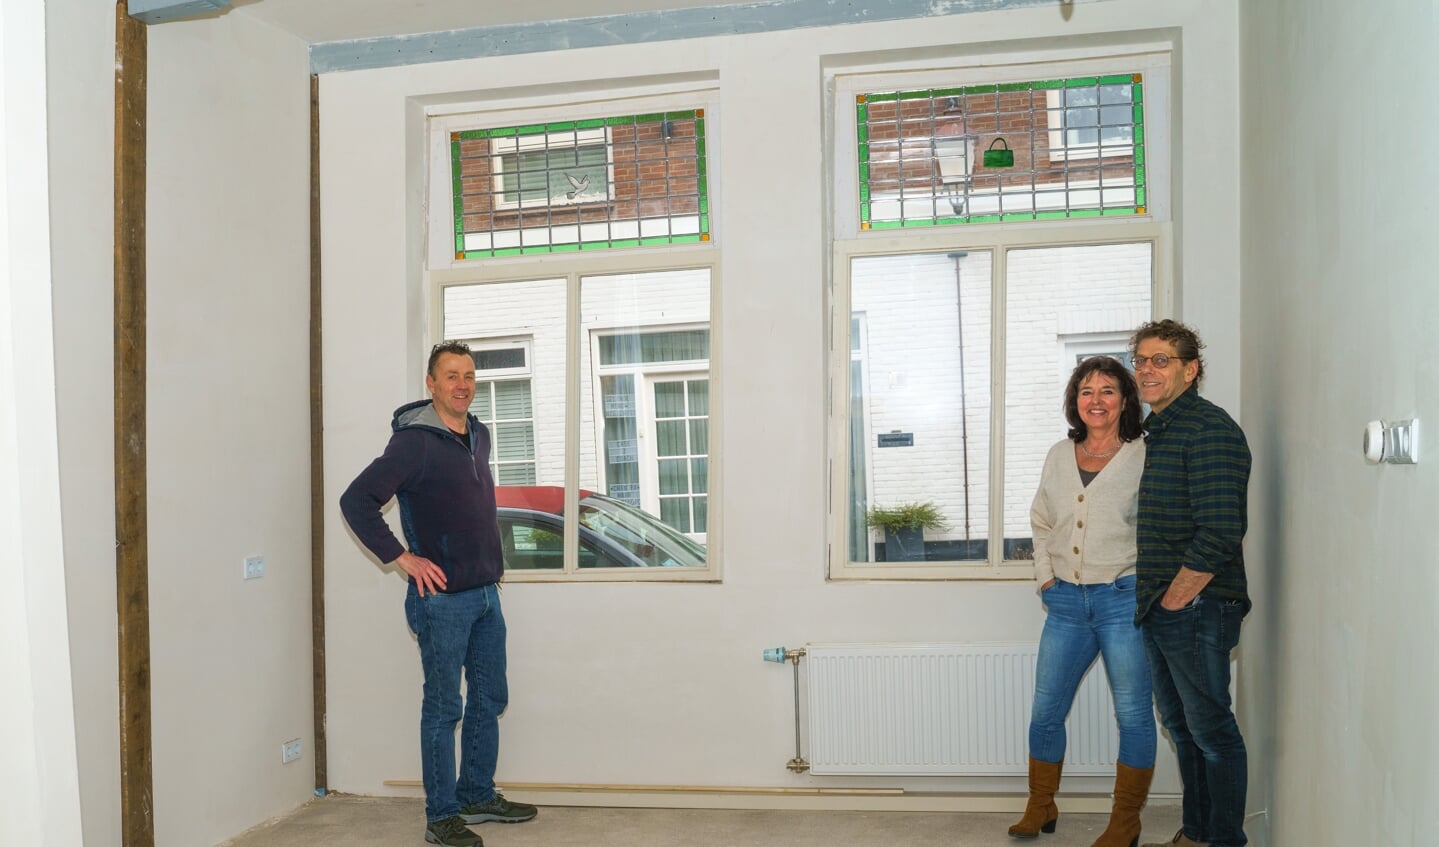 Ruud Harberts, Elsa de Zwart en Gerard van Parreeren bij de nieuwe glas-in-loodramen in het huis aan de Gravenstraat. n het ene raam prijkt een witte duif, in het andere raam een groen tasje.